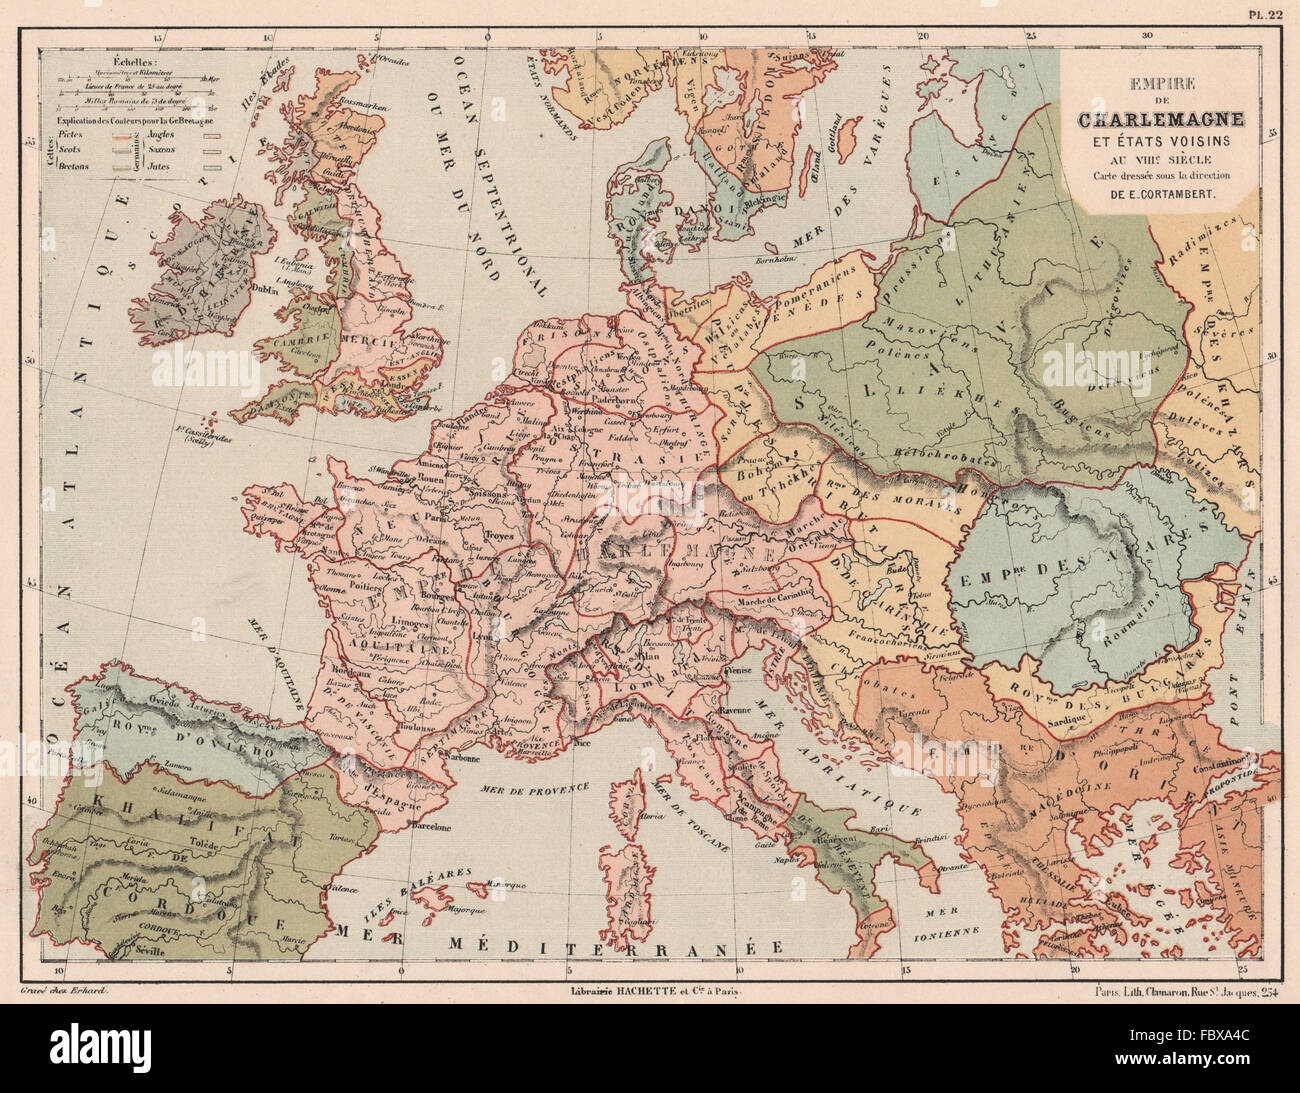 8TH secolo in Europa. Impero carolingio. Impero di Carlo Magno, 1880 mappa  vecchia Foto stock - Alamy